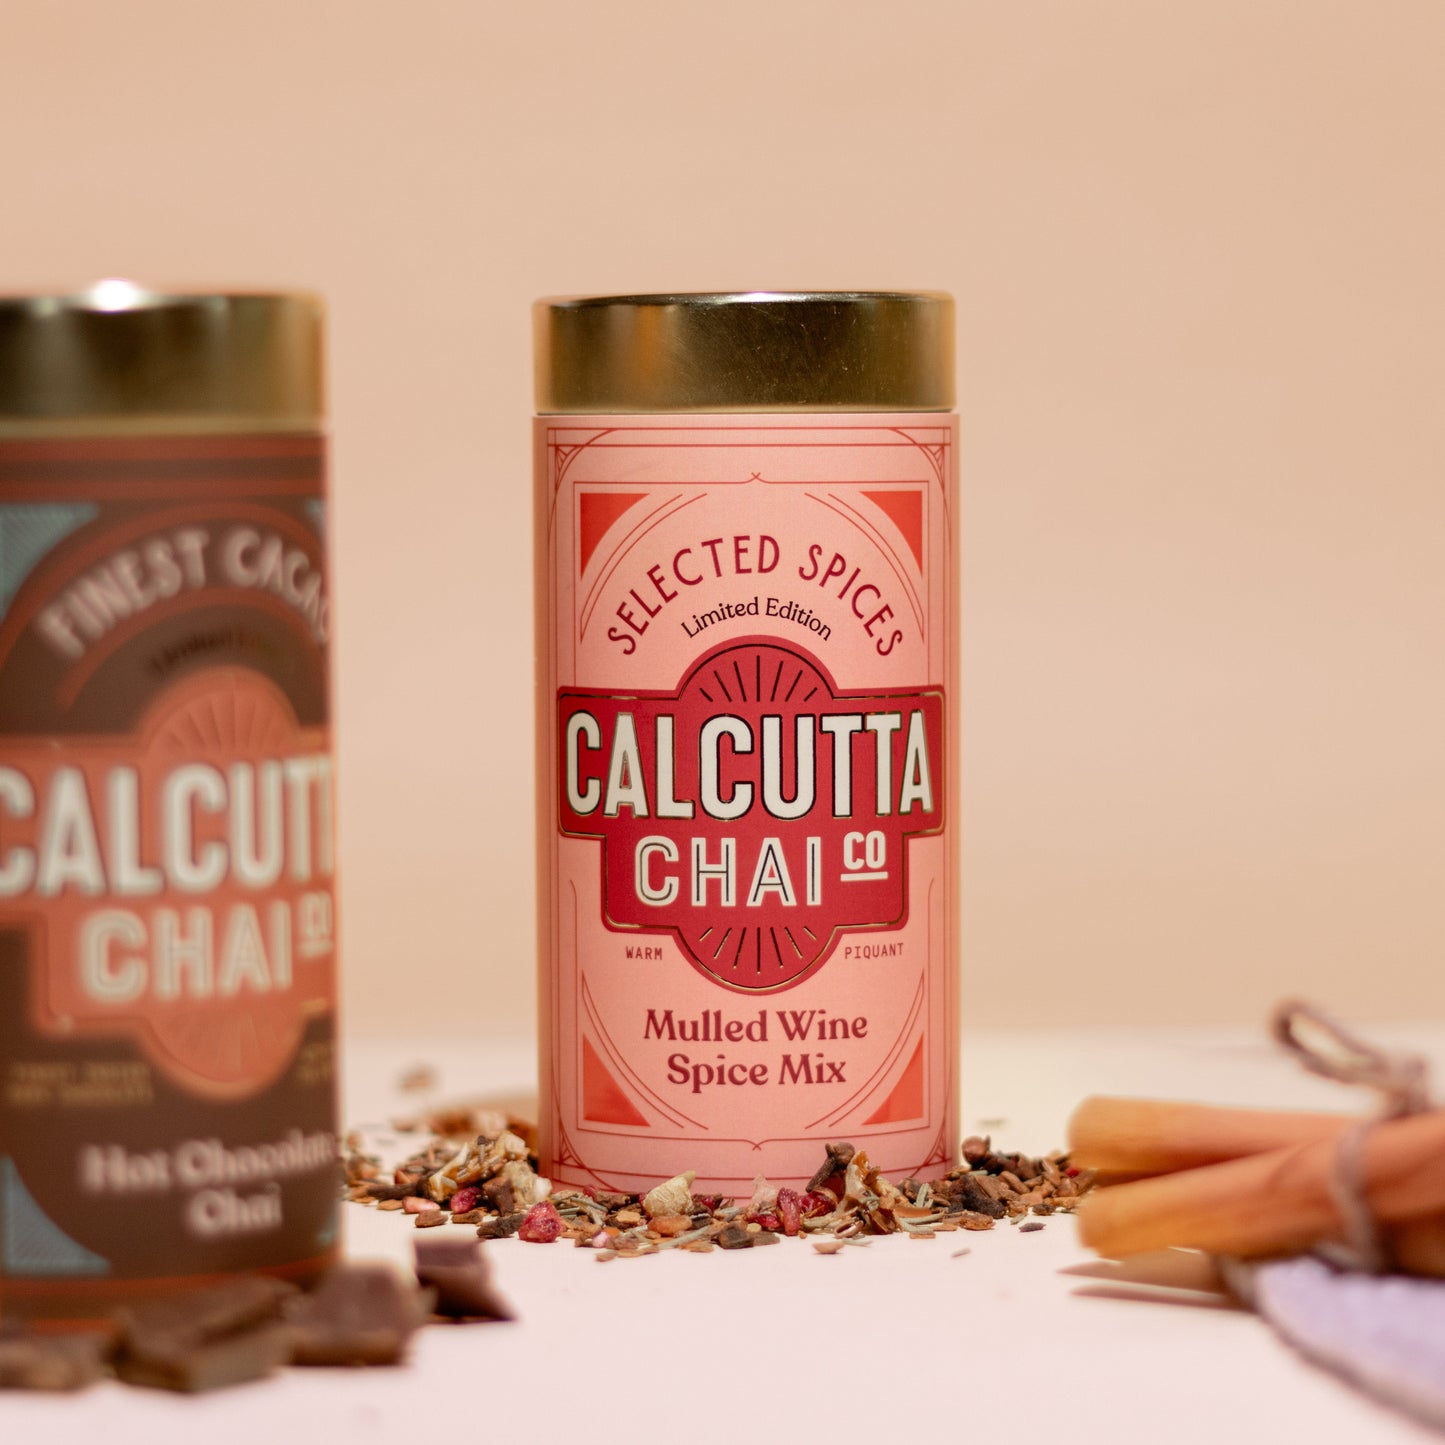 Calcutta Chai Co The Festive Gift Box - Selected Specials